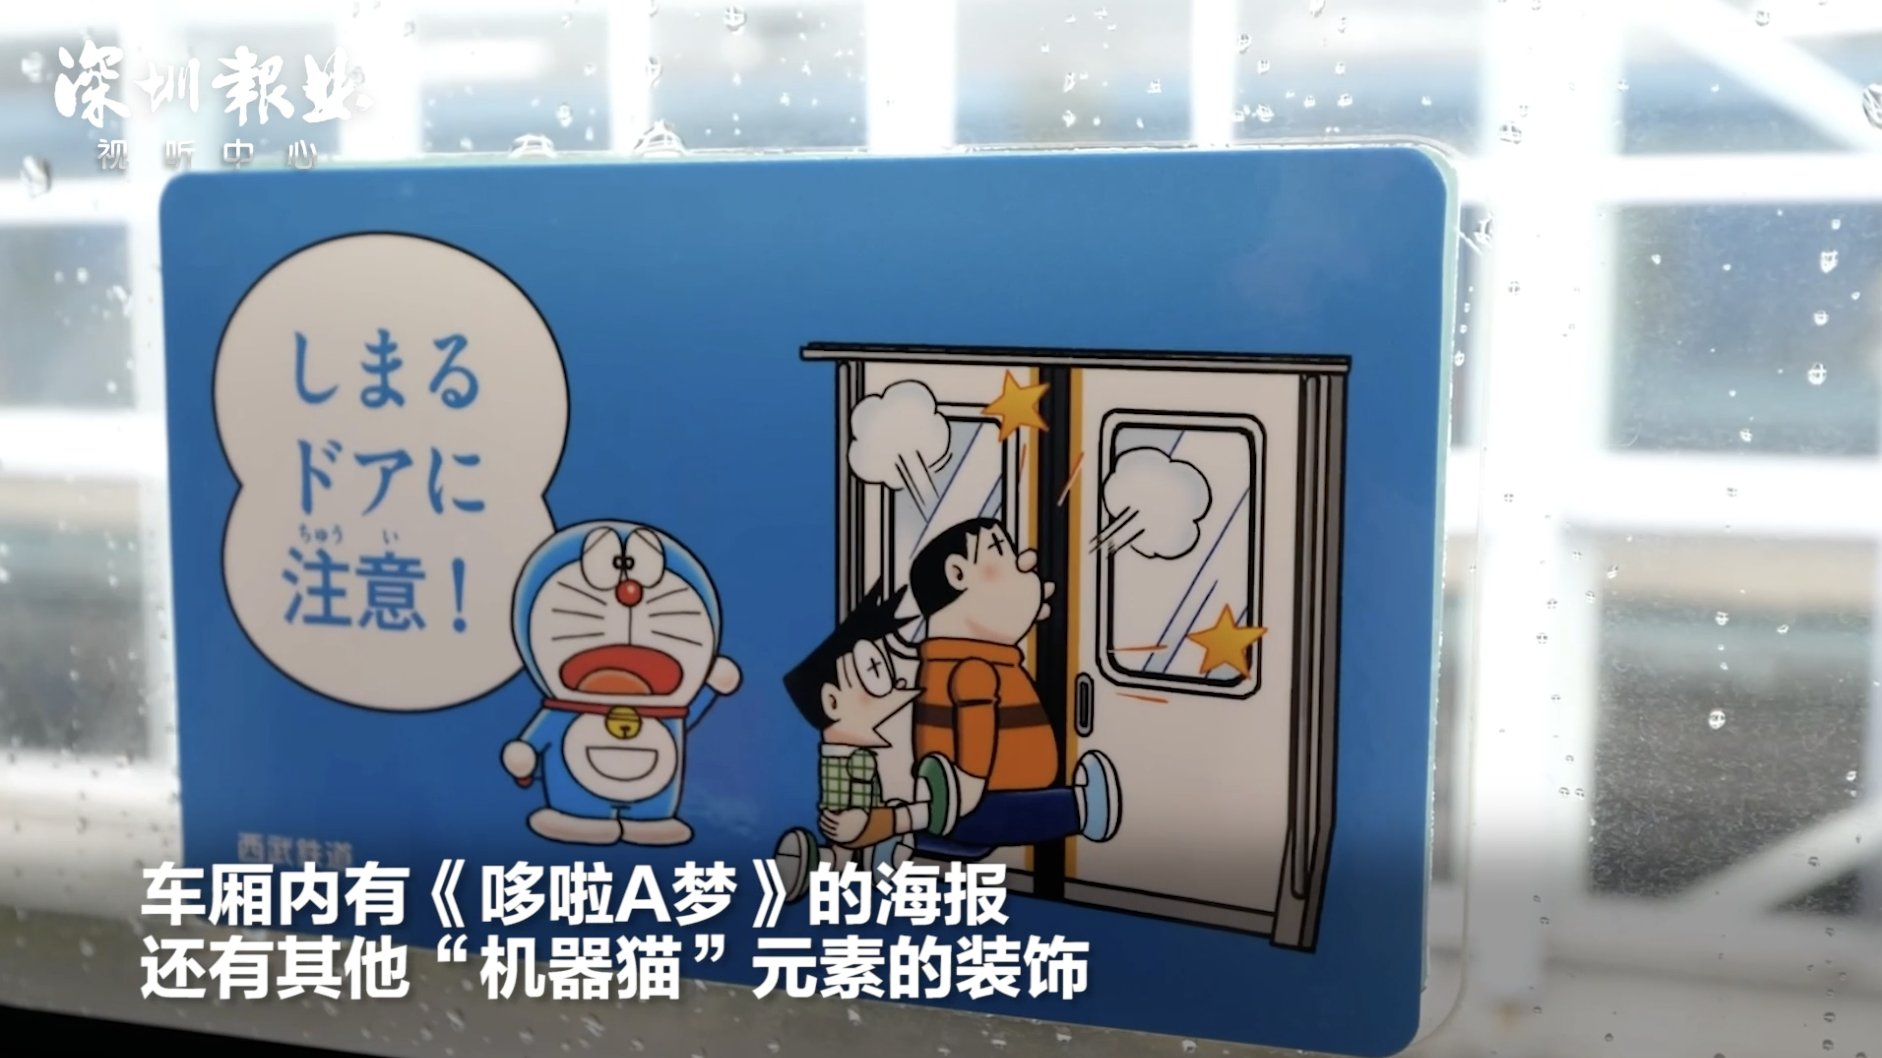 别人家的列车！日本推出哆啦A梦主题列车